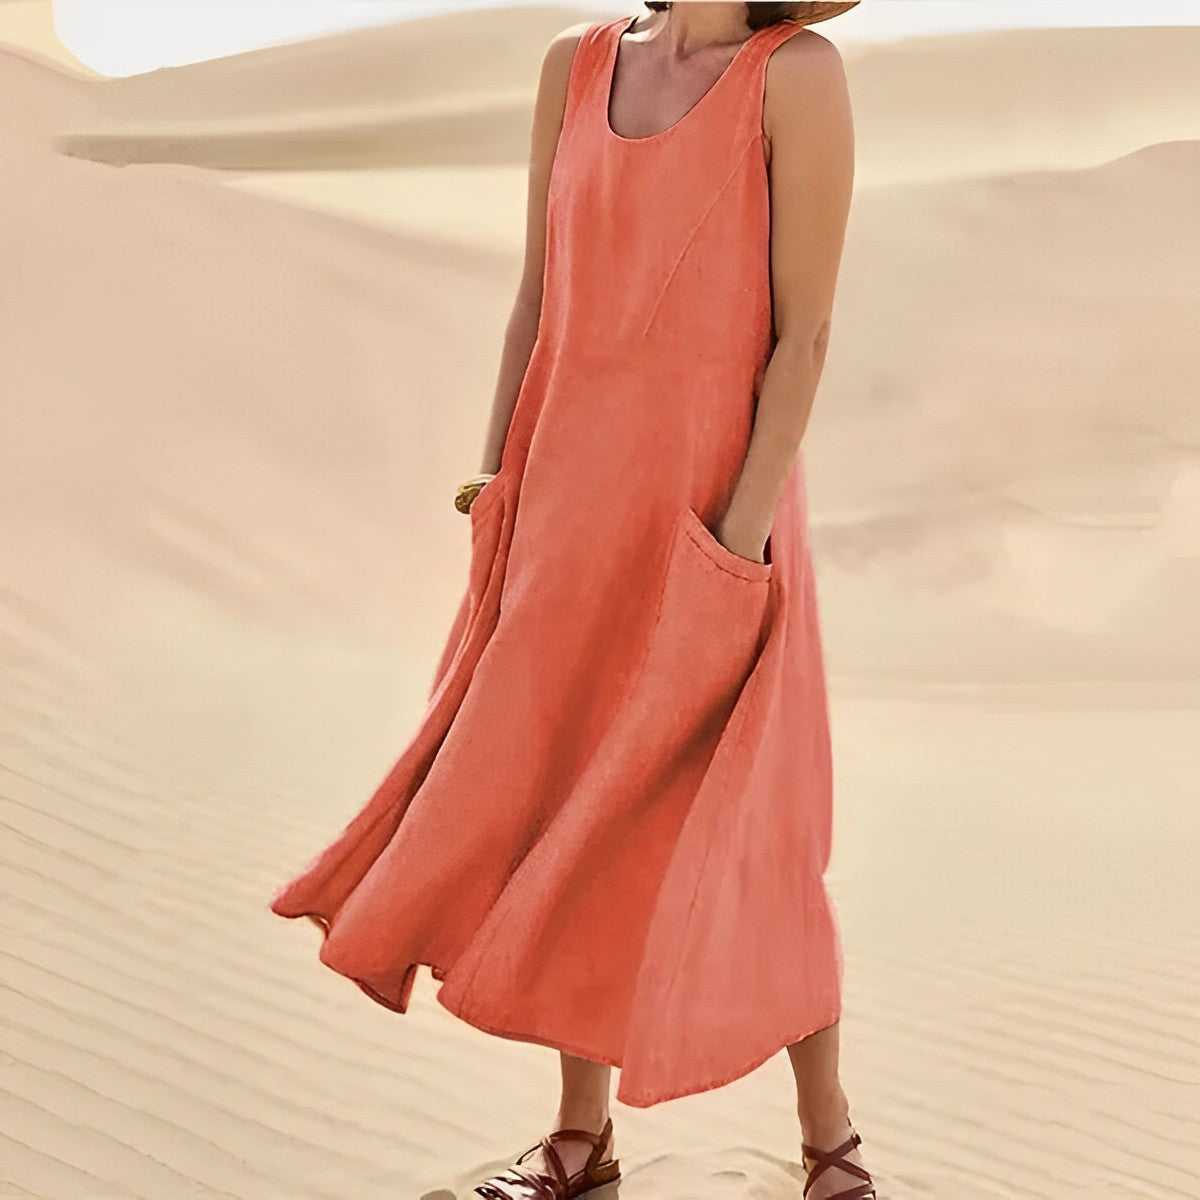 Elle&Vire® - Stylish summer dress for women